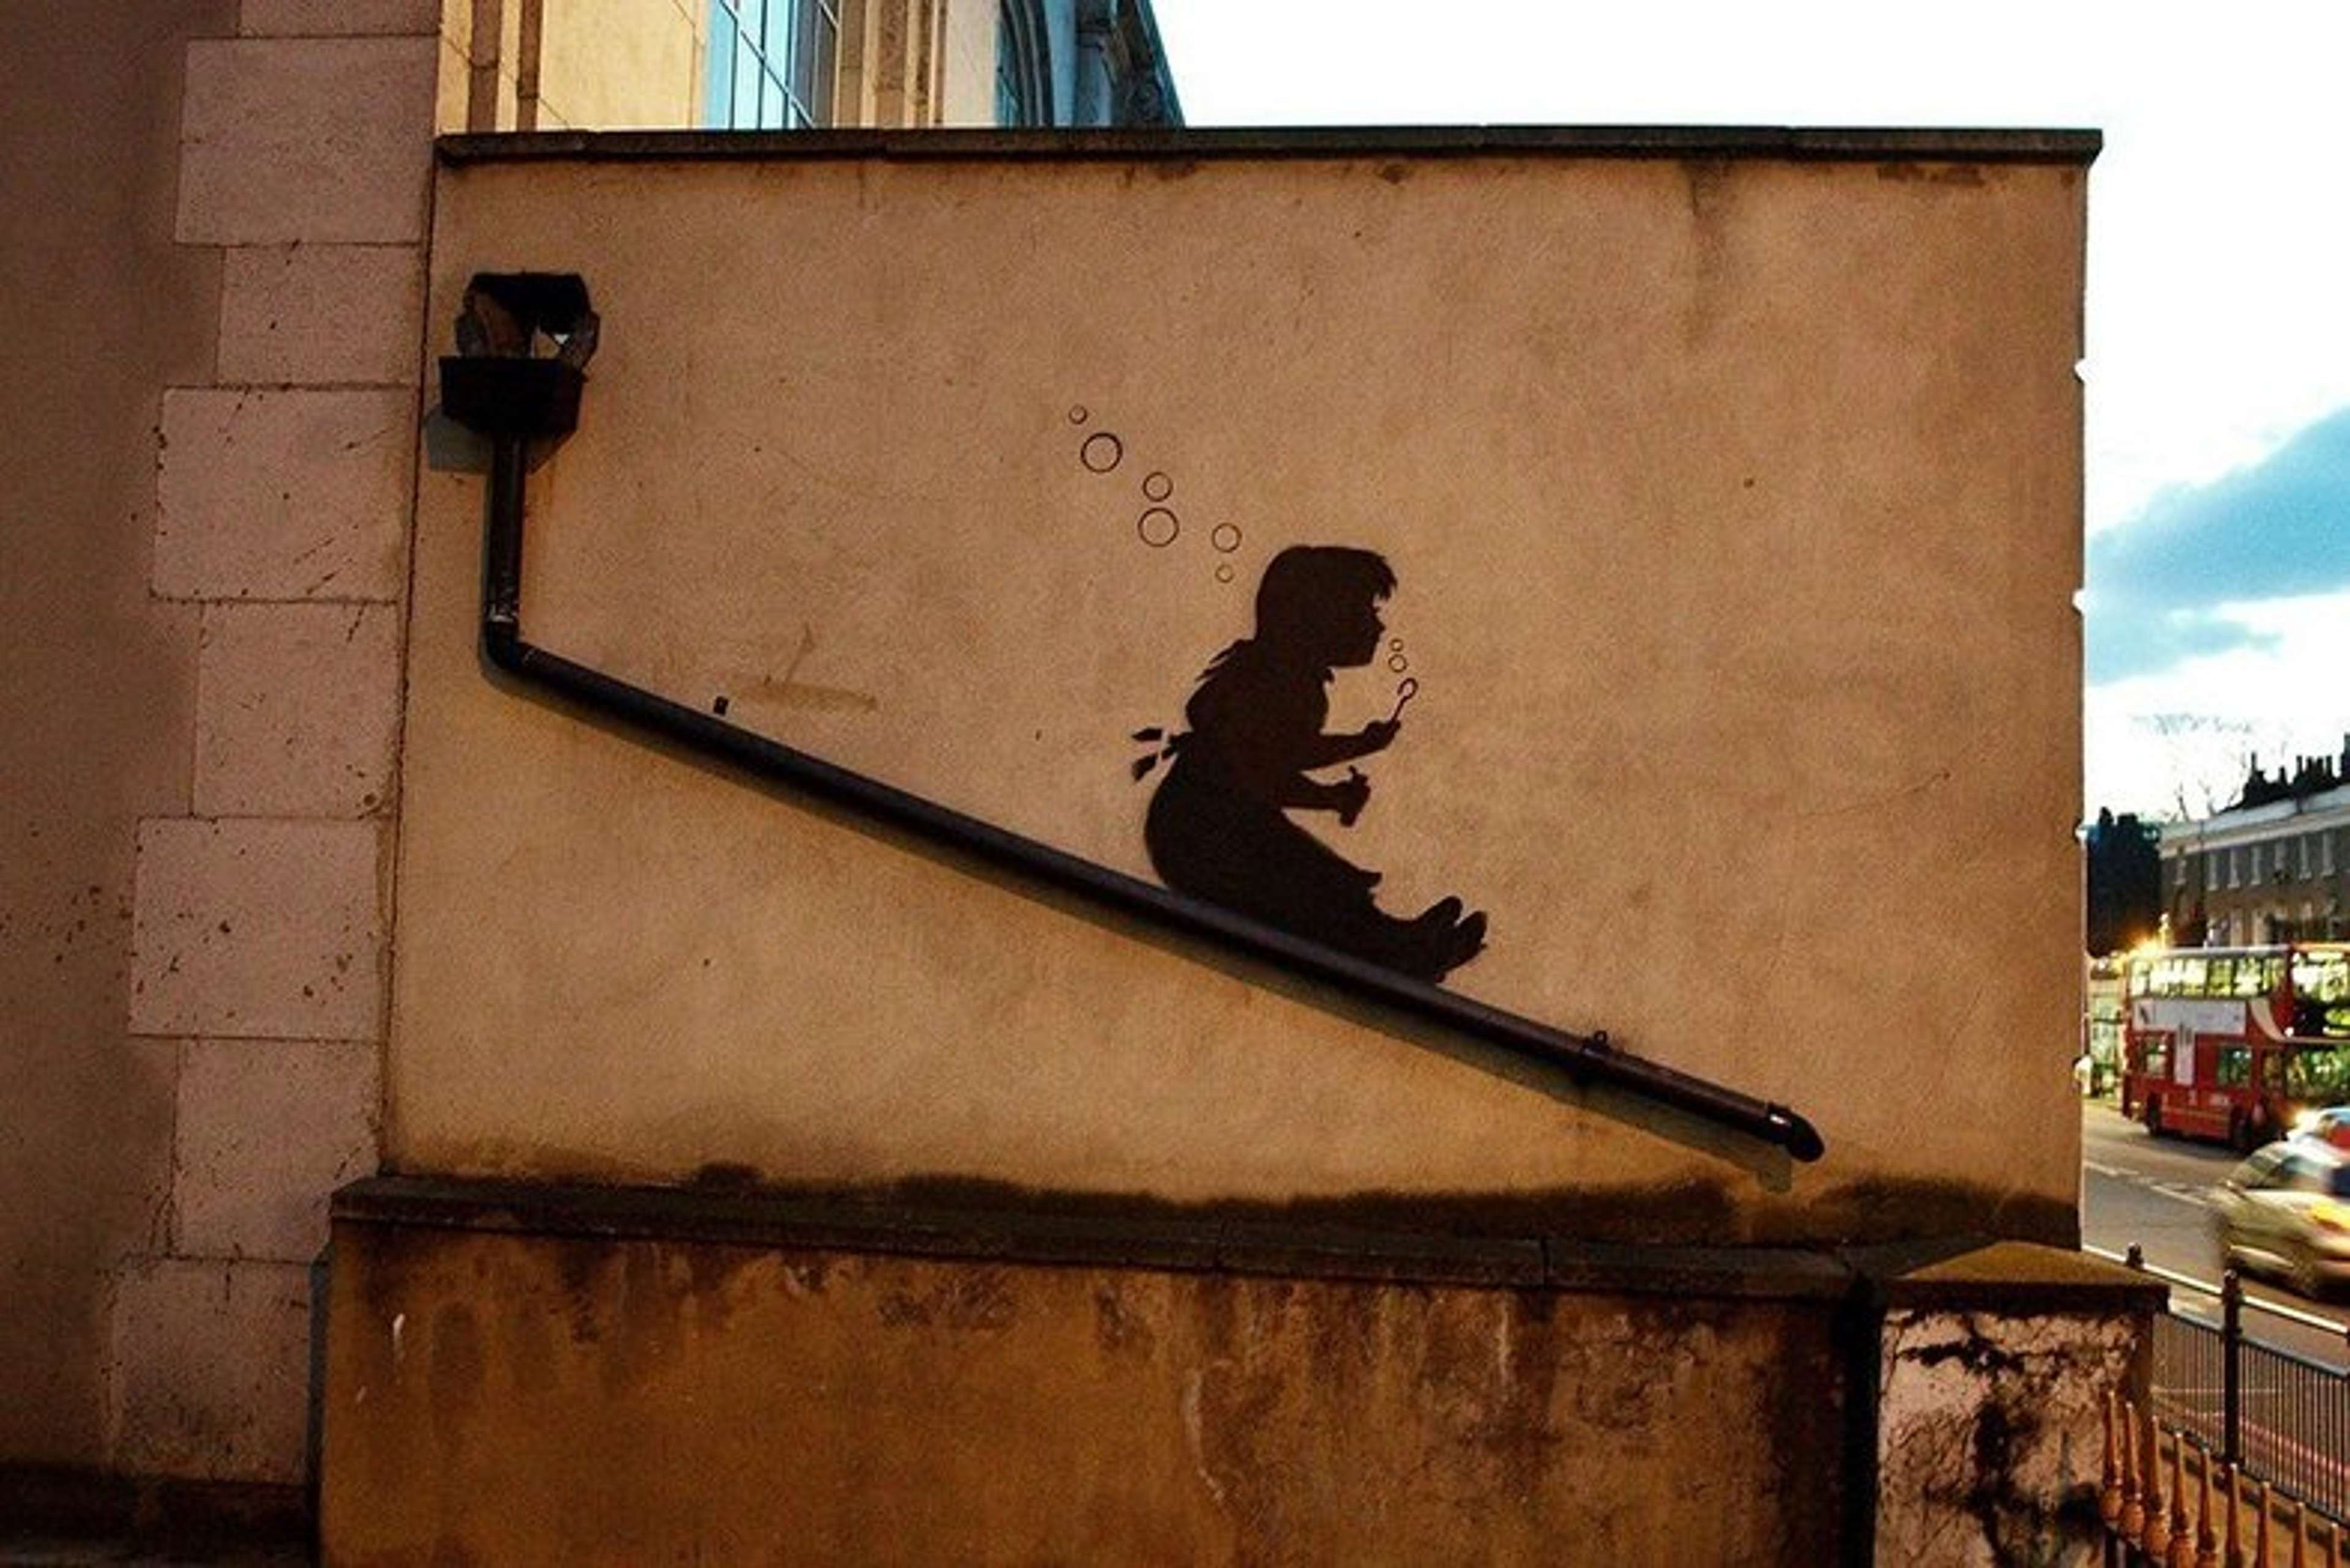 Bubble Slide Girl by Banksy